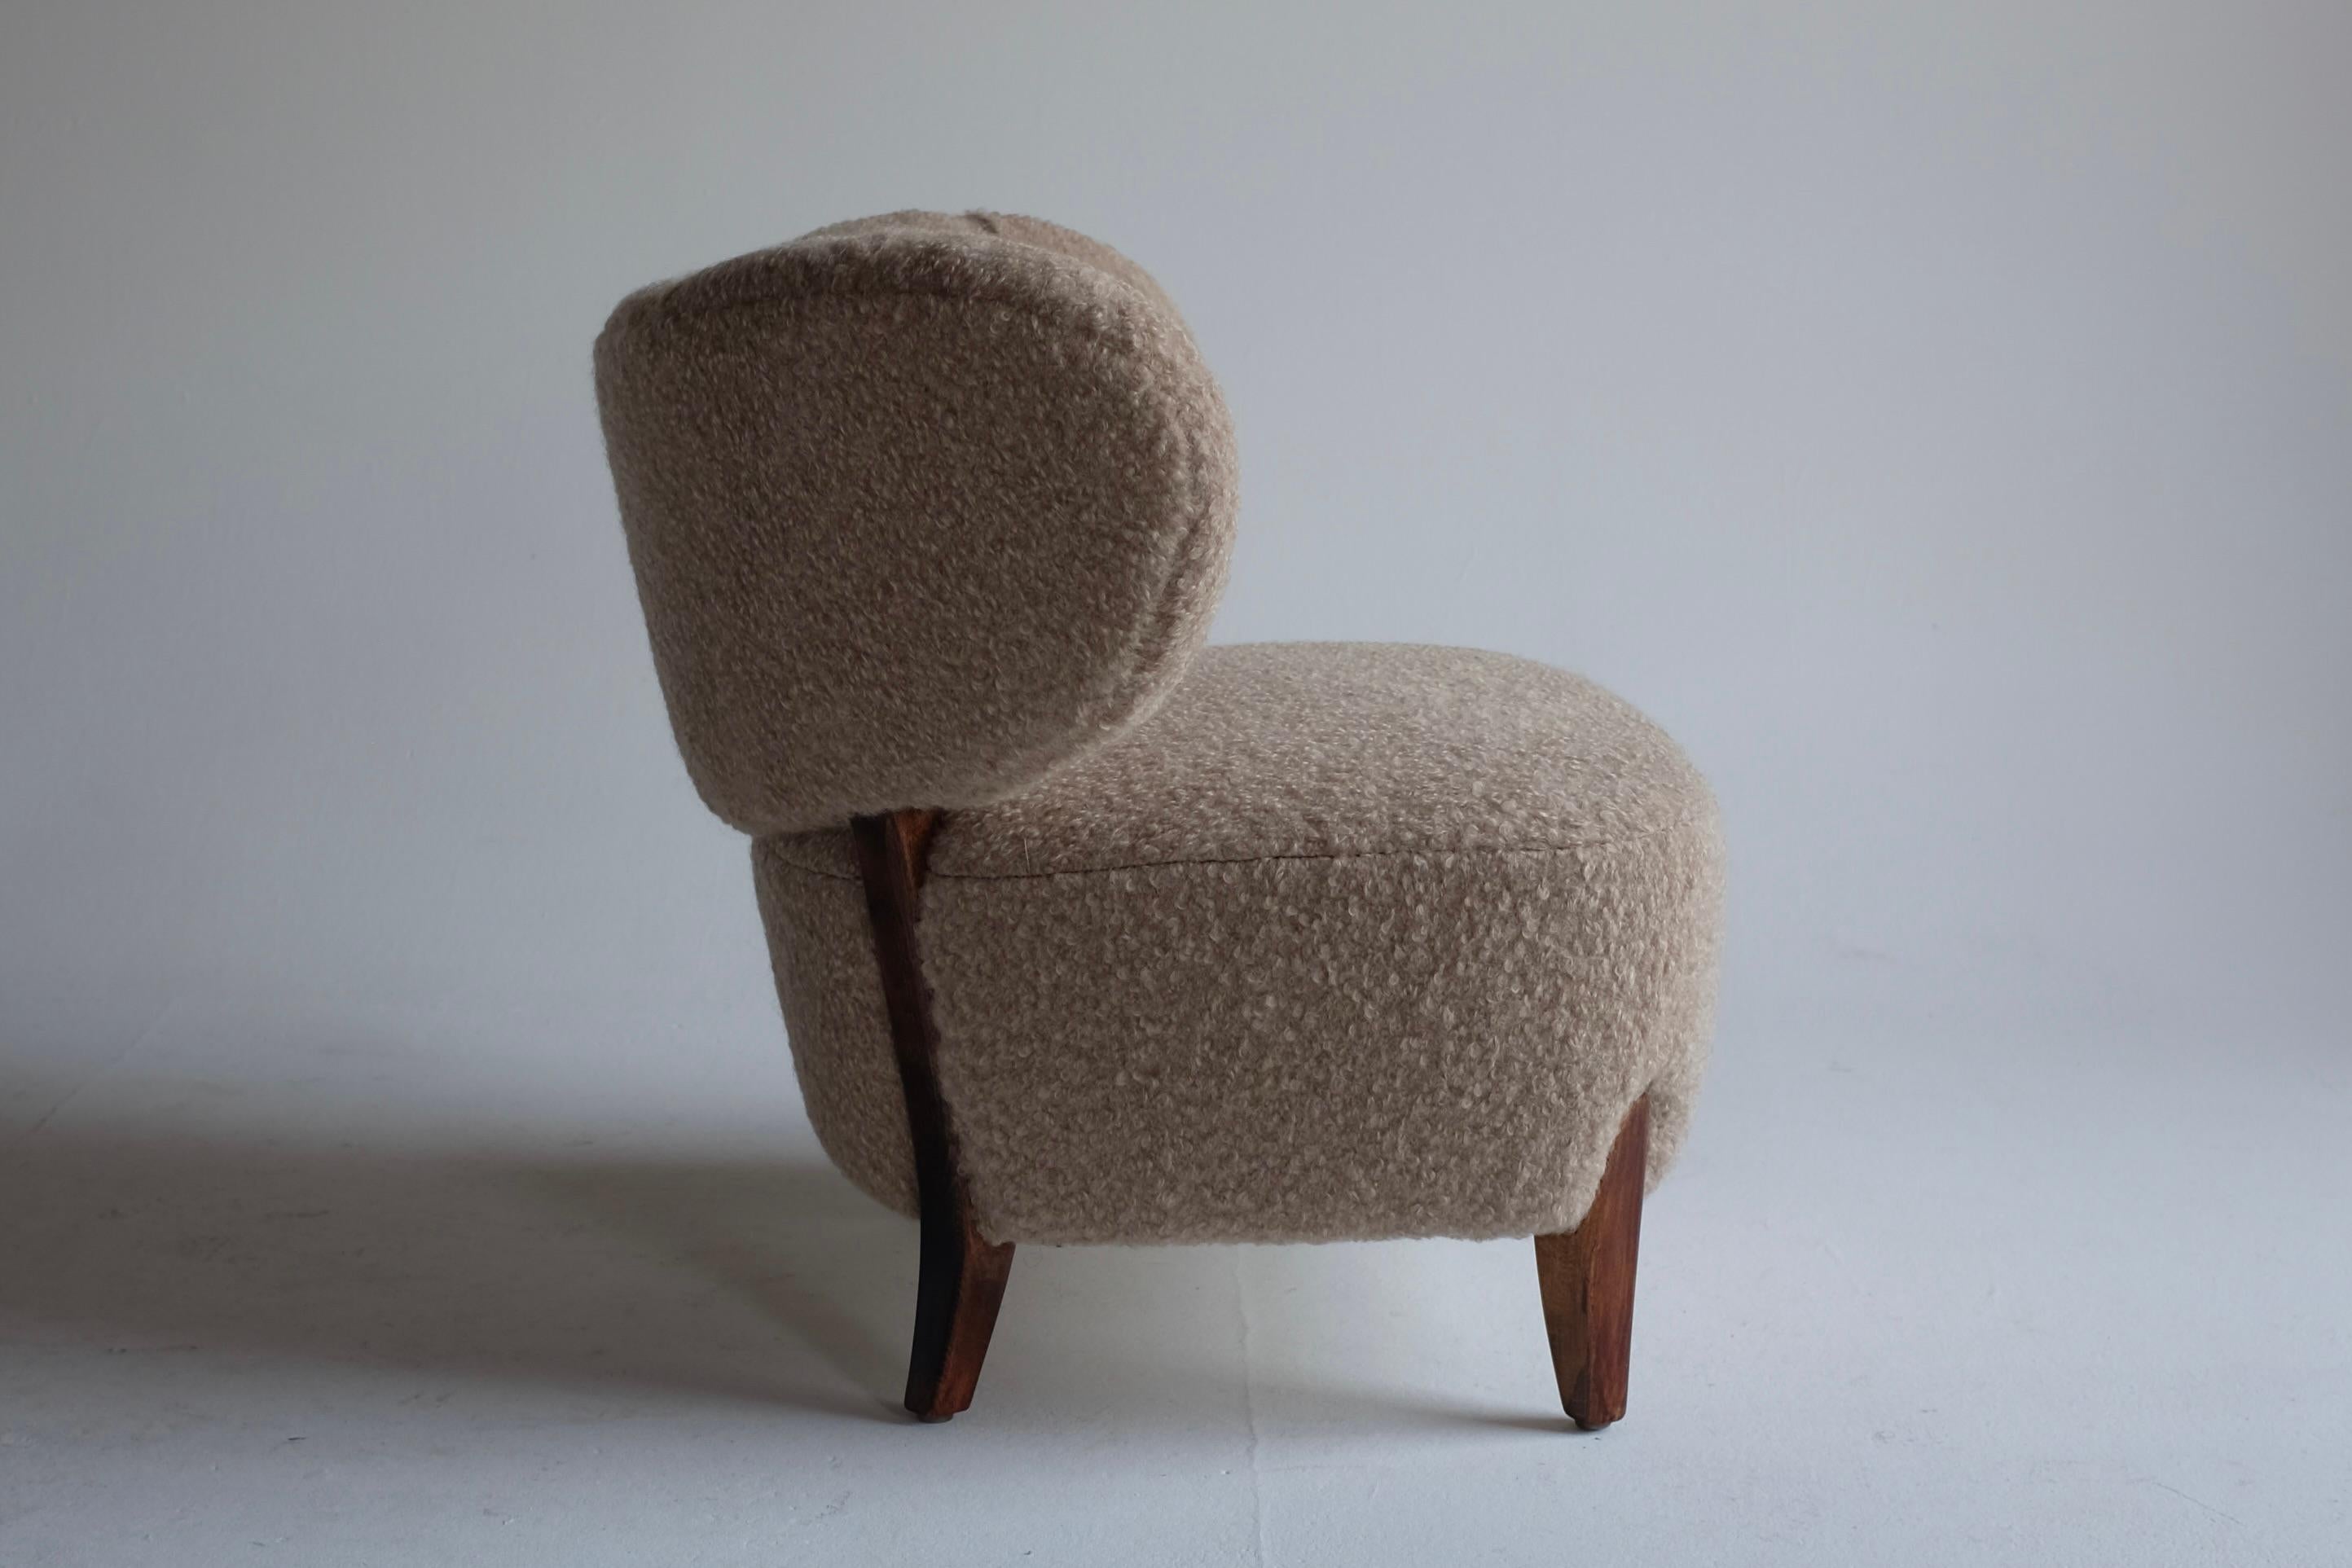 Magnifique fauteuil Easy d'Otto Schulz pour Boet datant des années 1940. Tissu Schumacher Teddy Boucle nouvellement tapissé. Otto Schulz est aujourd'hui une figure emblématique du mobilier et du design d'intérieur suédois. Actif dans les années